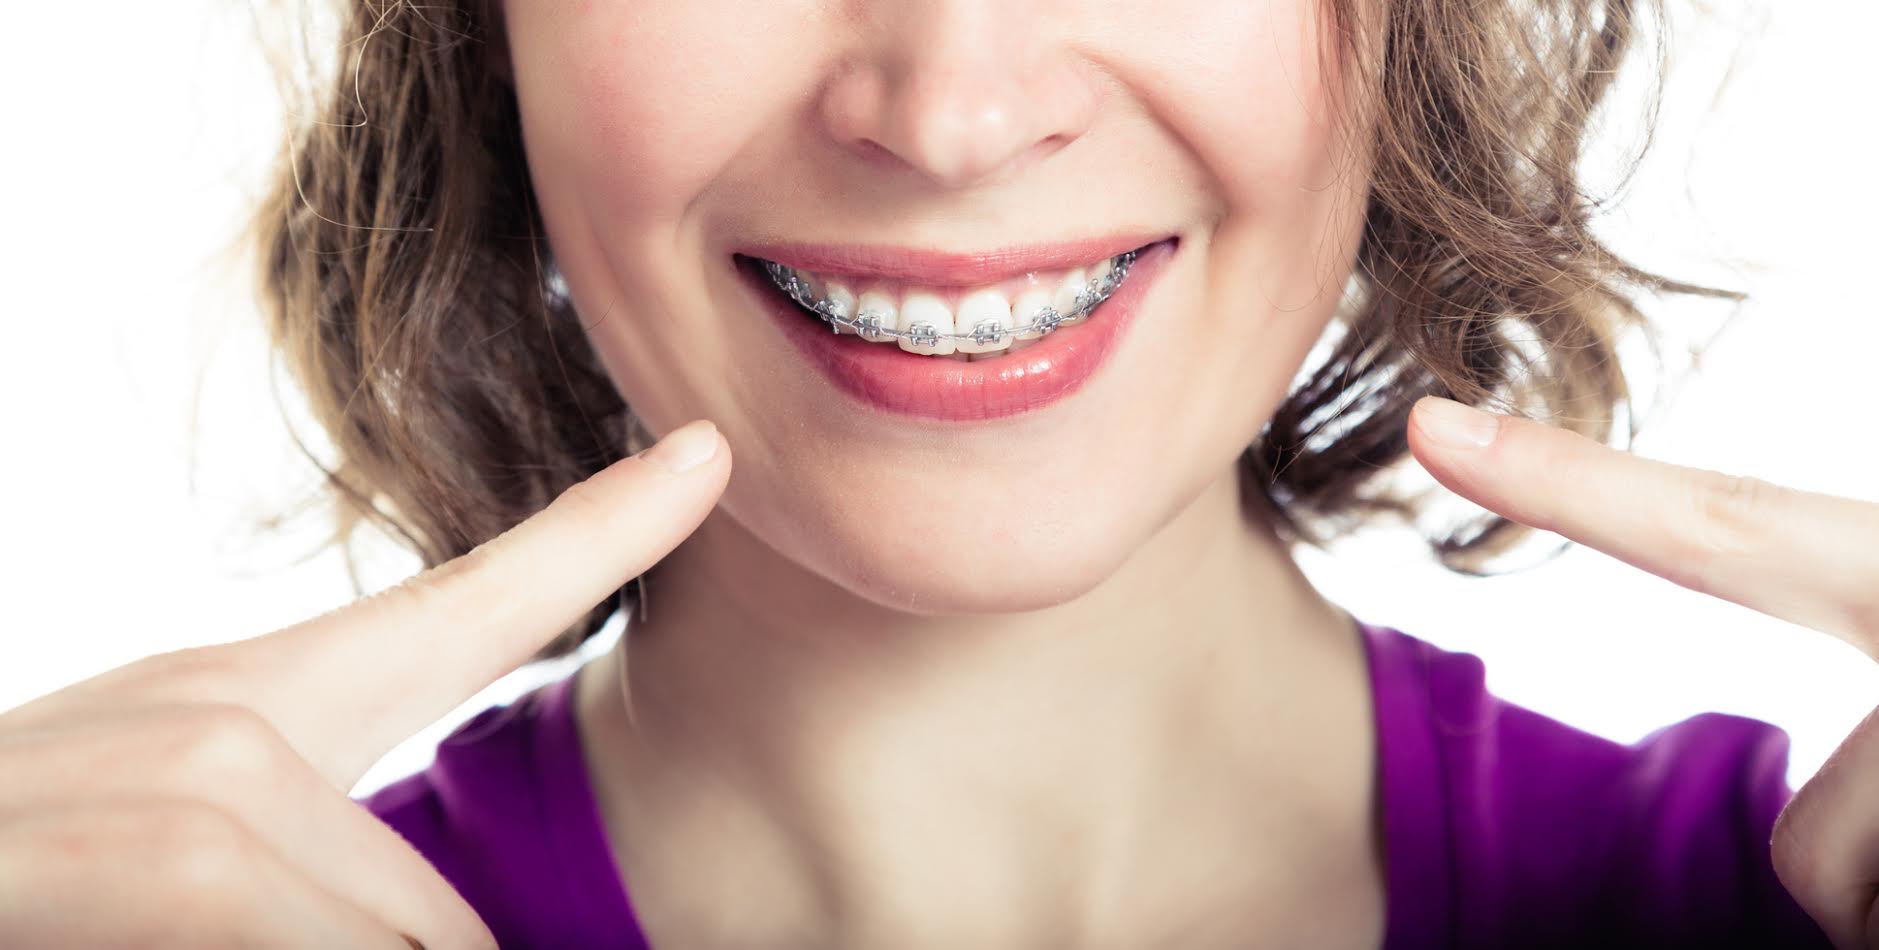 dental-white-ortodoncja-ortodonta-aparat-ortodontyczny